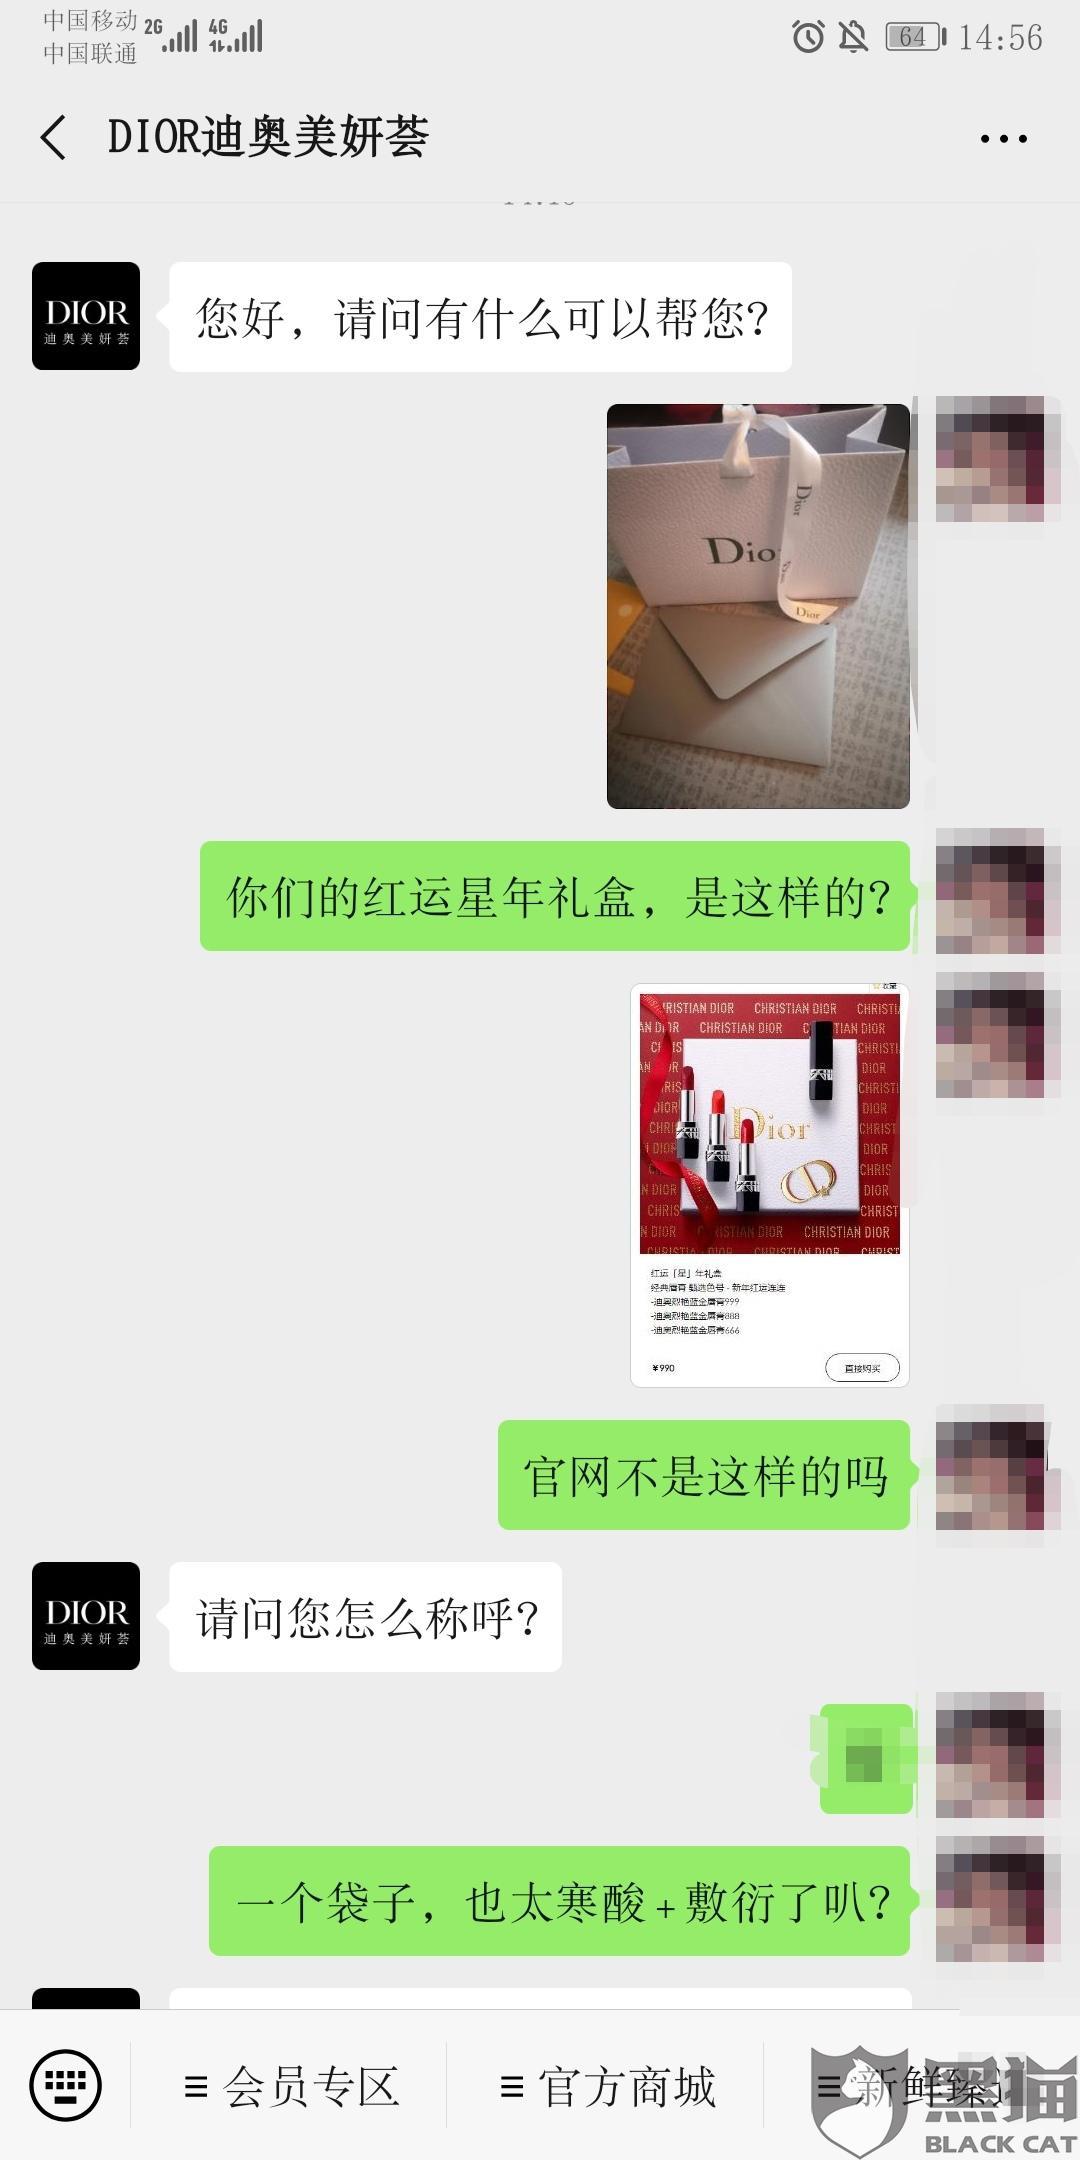 消费者质疑迪奥中国官网礼盒装产品虚假宣传 Dior(迪奥)：已道歉